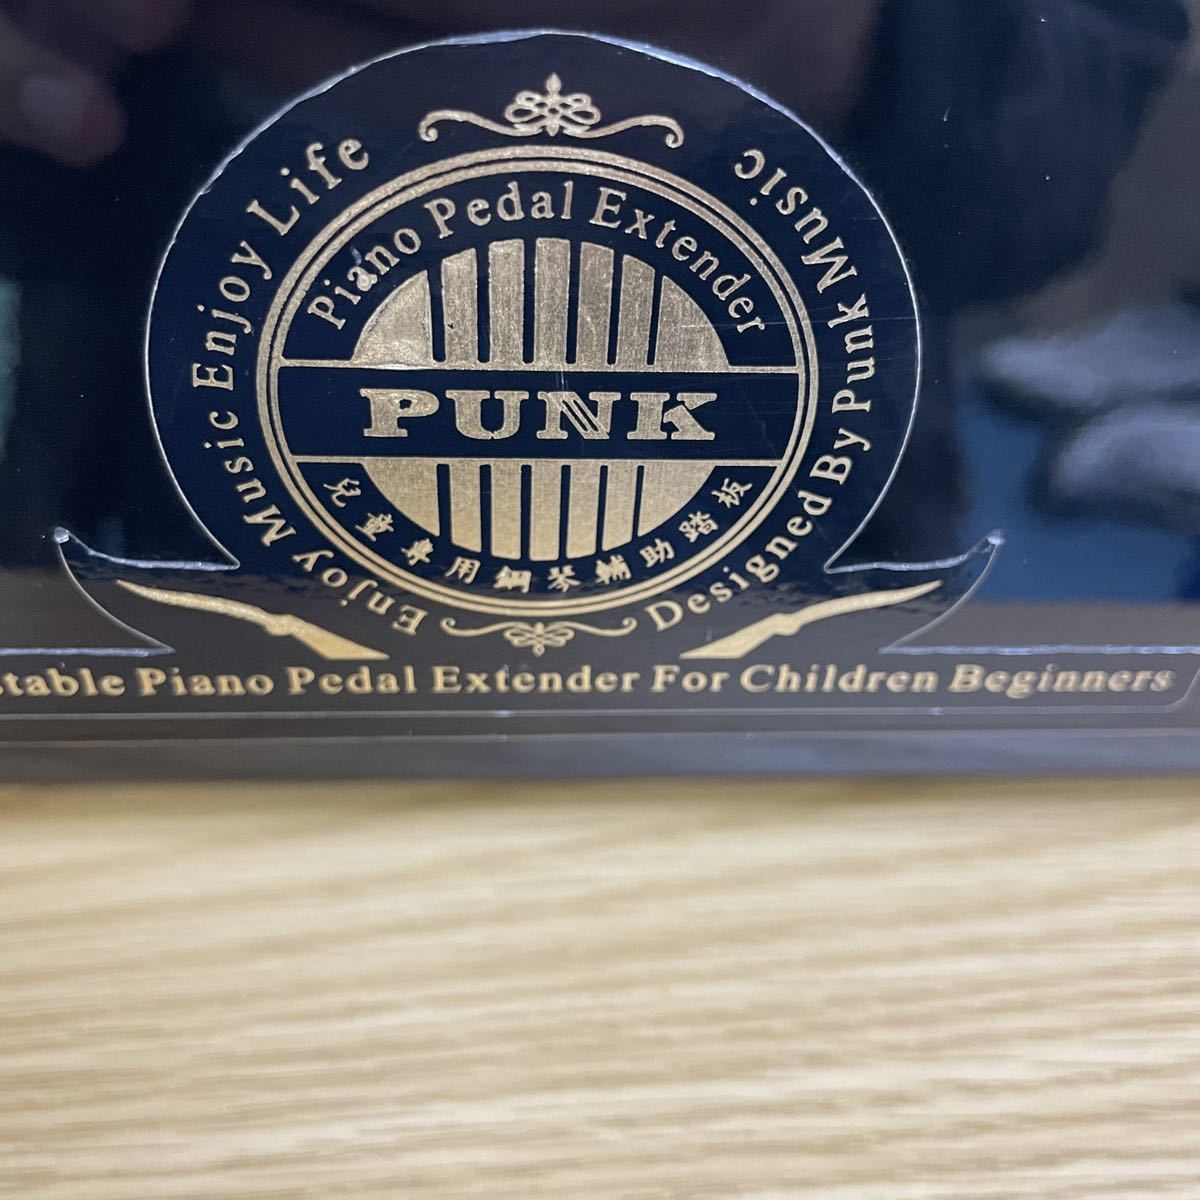 PUNK ピアノ補助ペダルの画像6